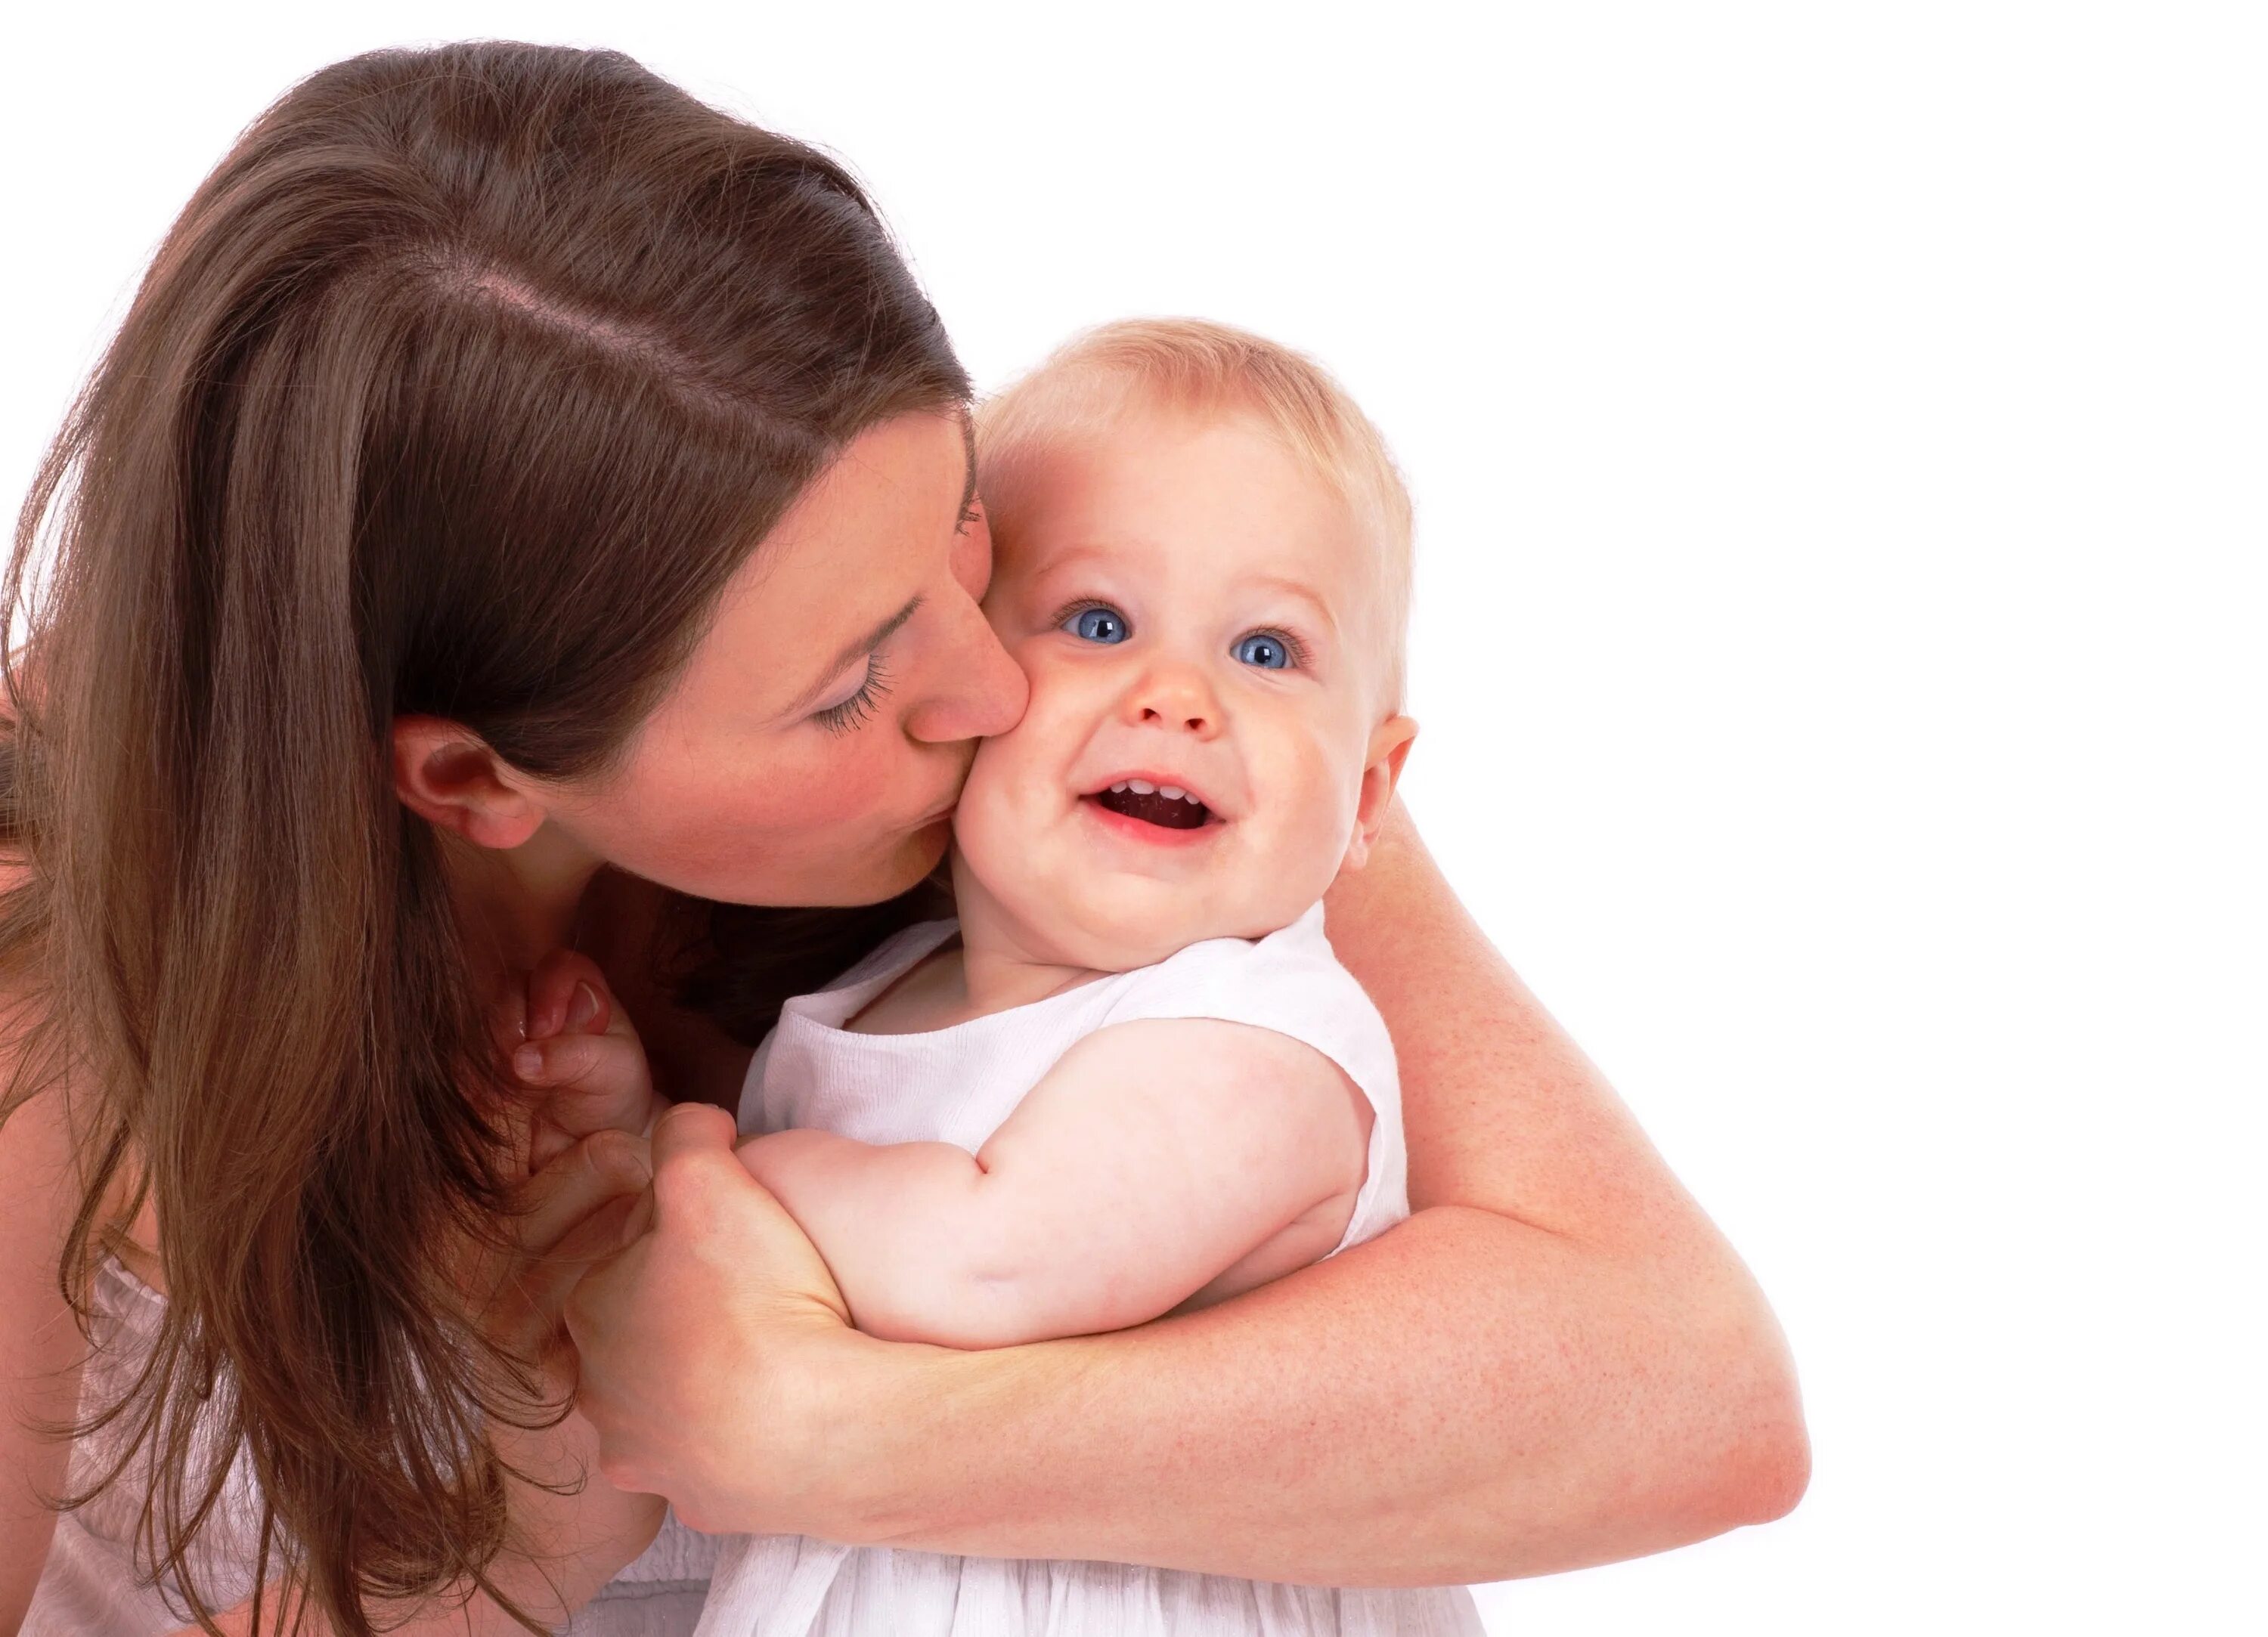 Бесплатное видео про маму. Малыш и мама. Женщина с ребенком. Мама с младенцем. Мать с ребенком на белом фоне.